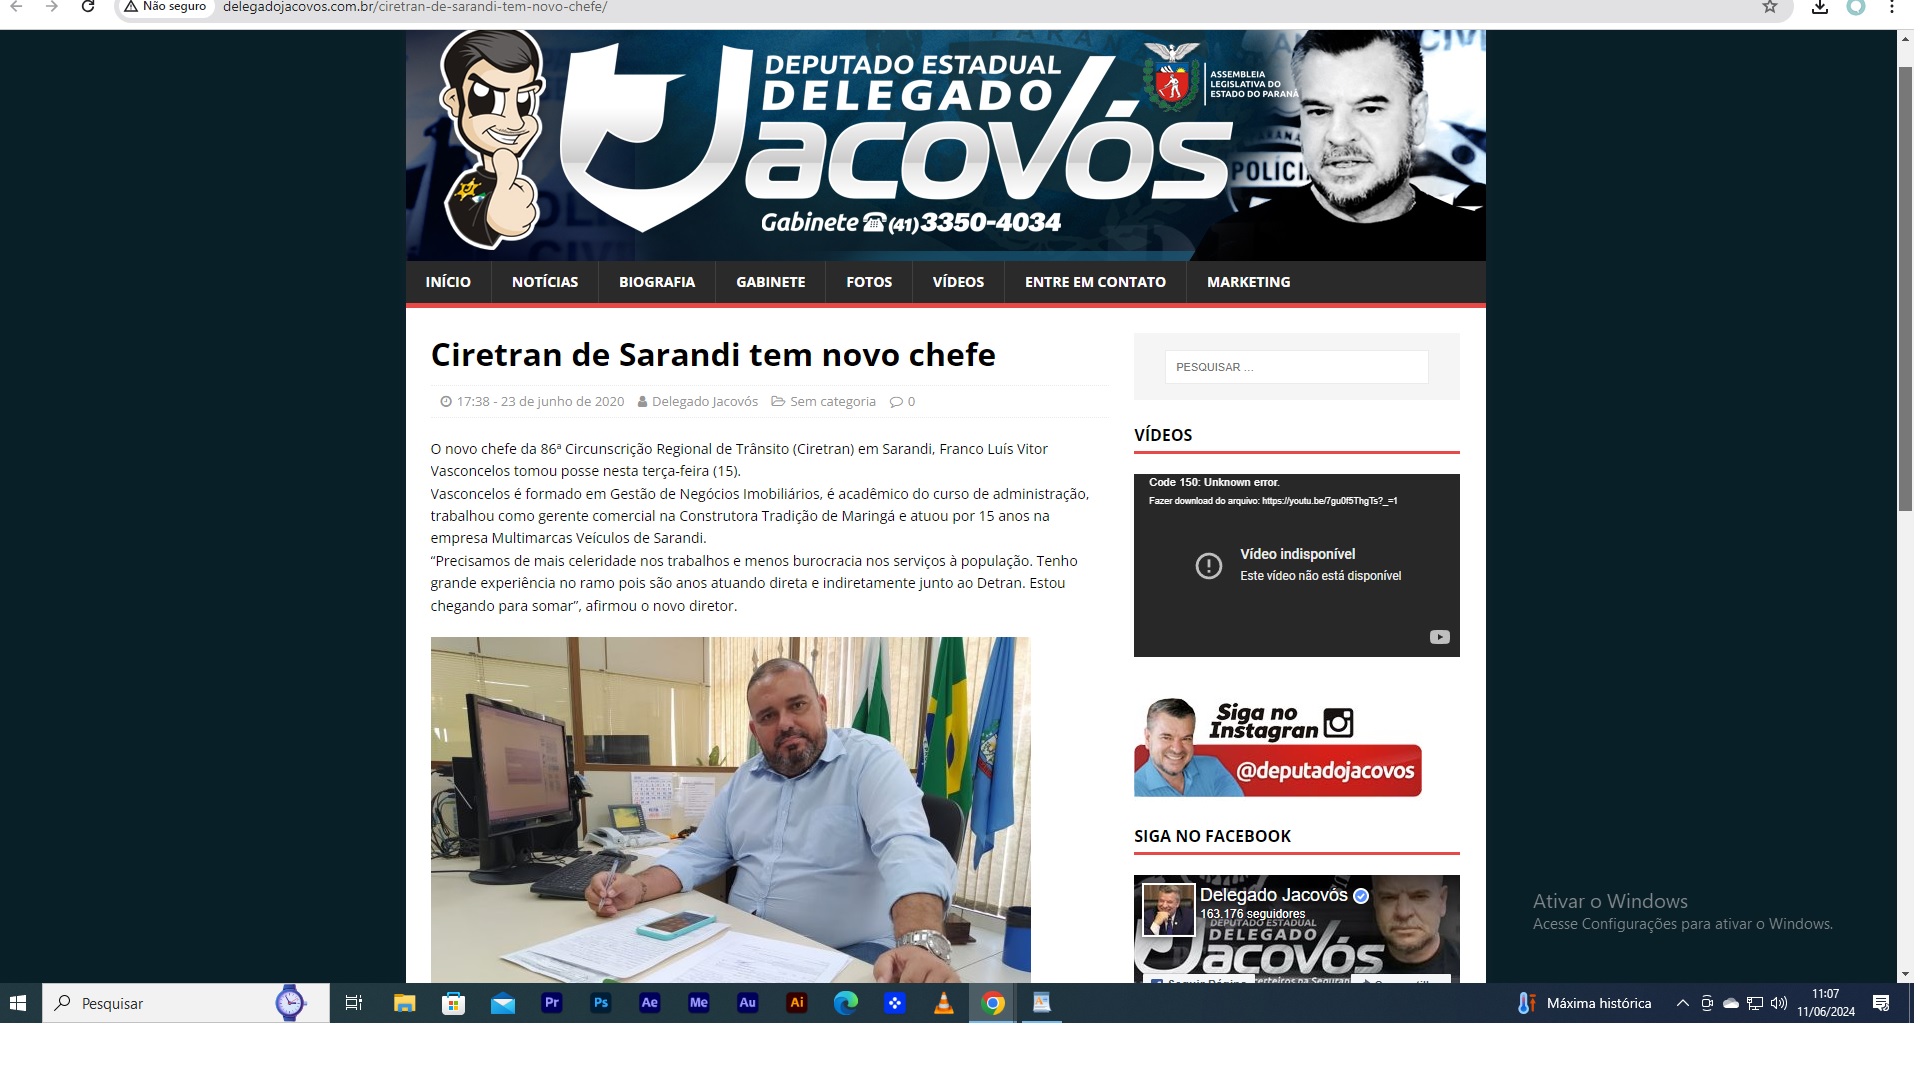 Gaeco Ciretran de Sarandi: Mais uma decepção para o deputado delegado Jacóvos(PL) ?